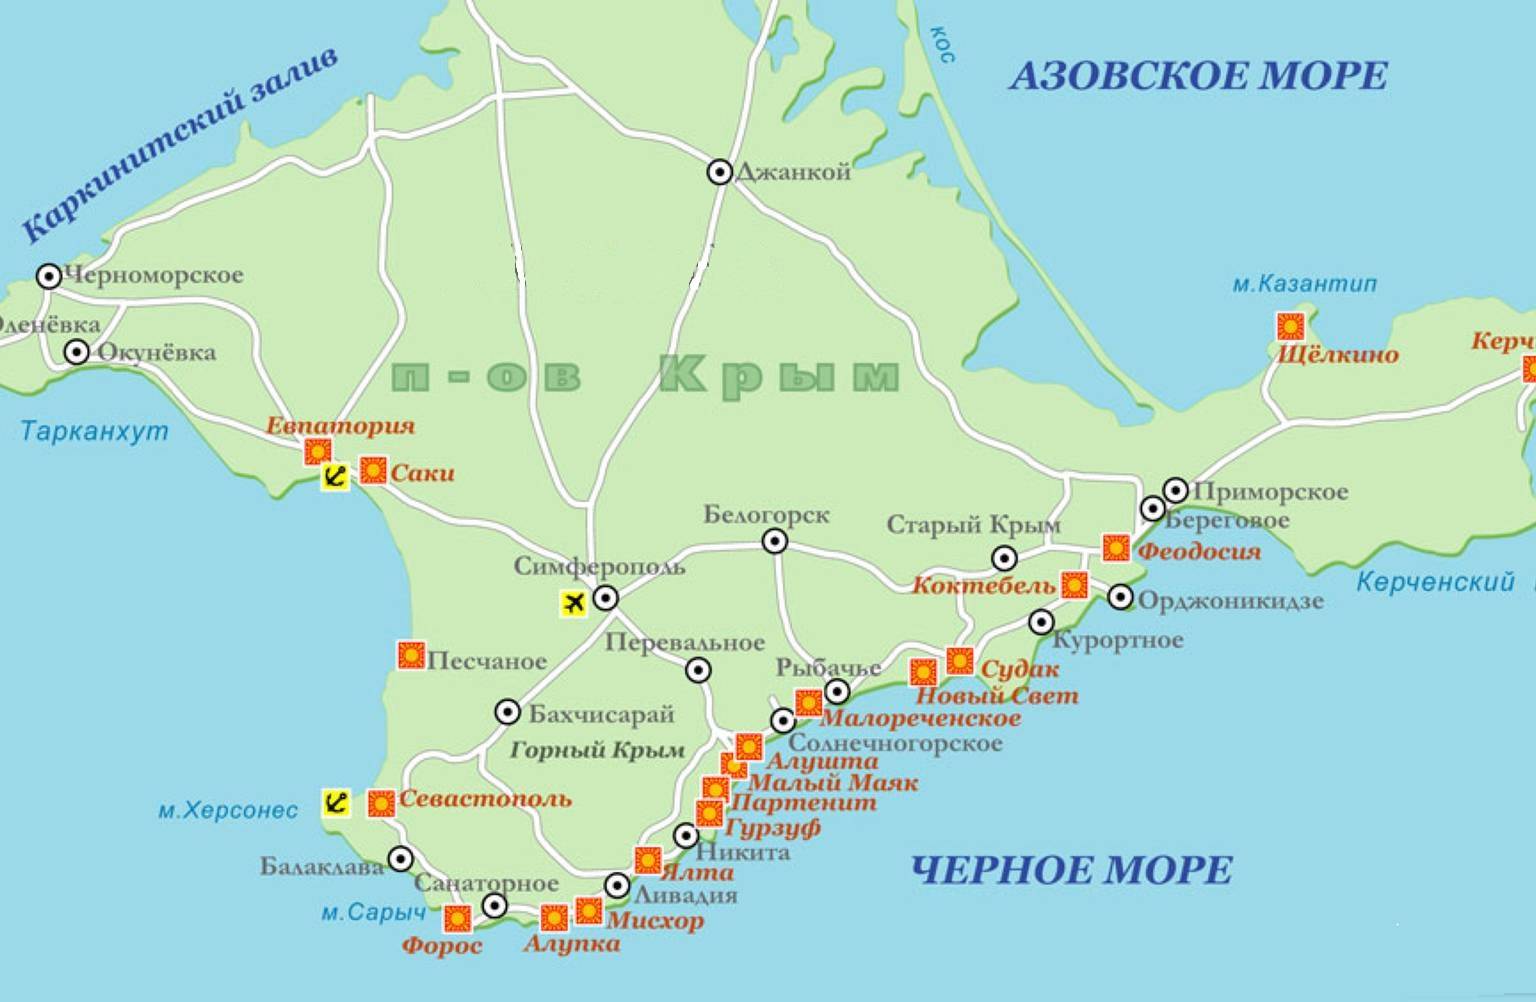 Курорты крыма - пляжи и достопримечательности. карта крыма.